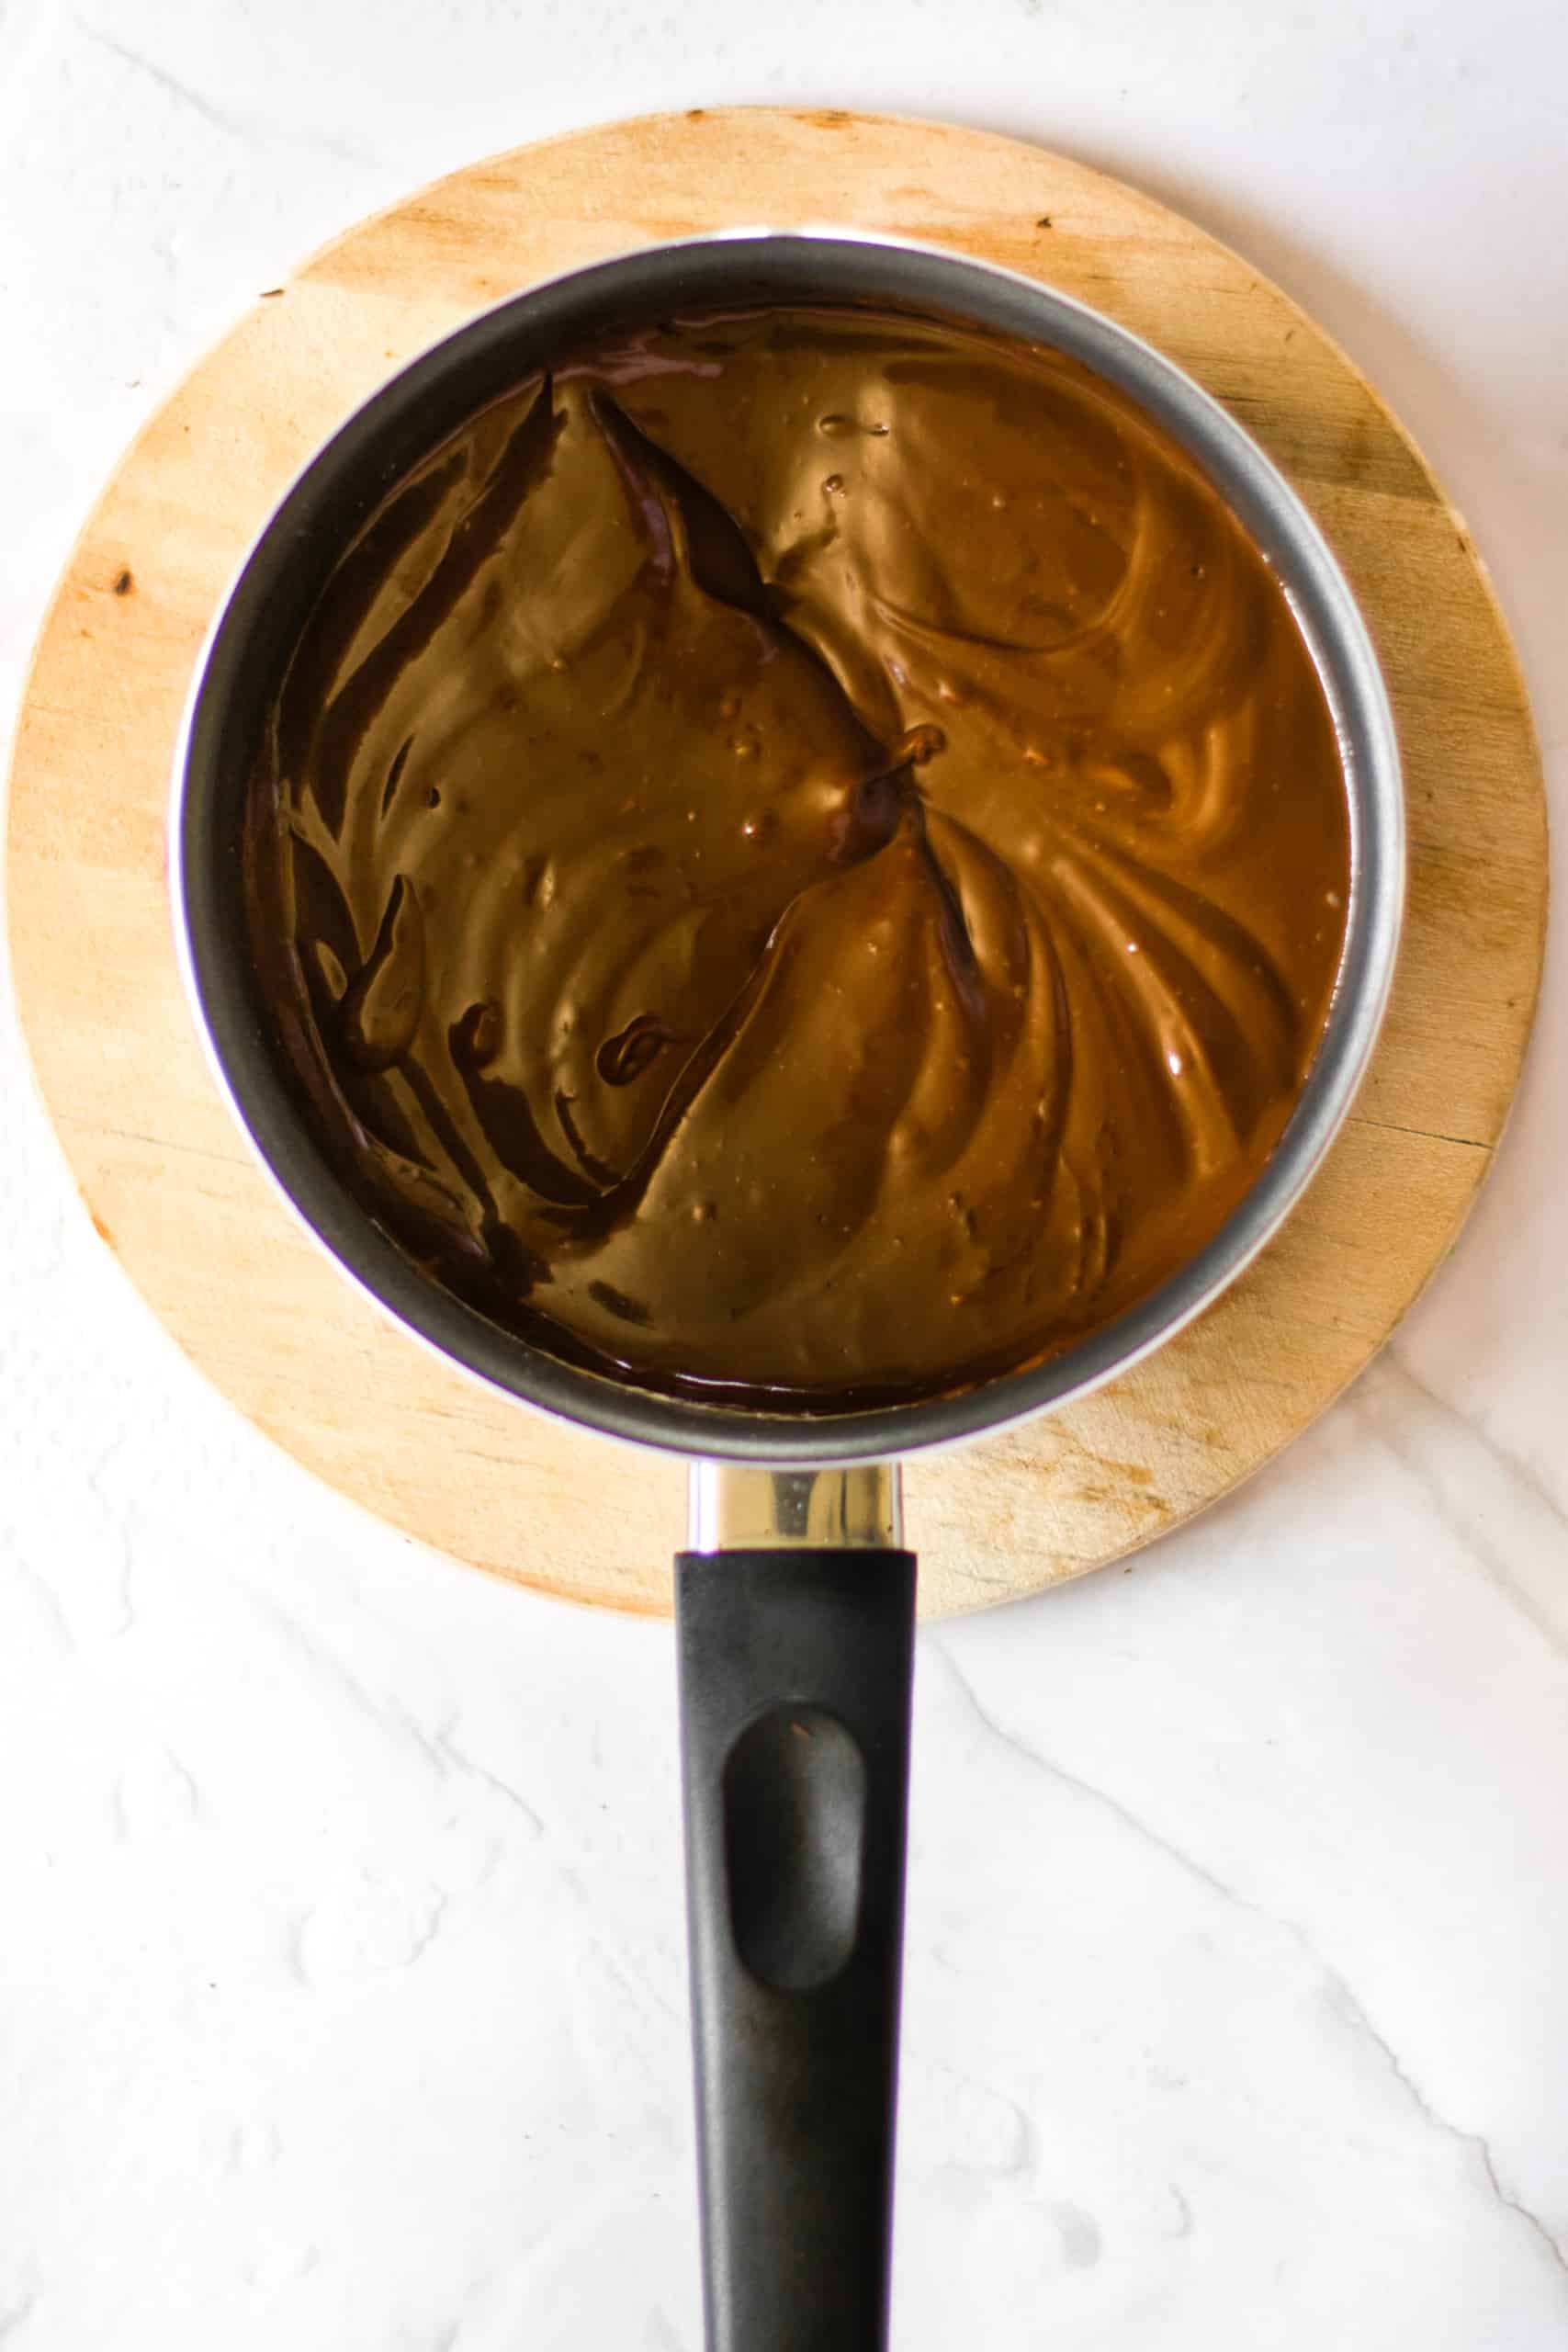 Chocolate ganache filling in a pot.